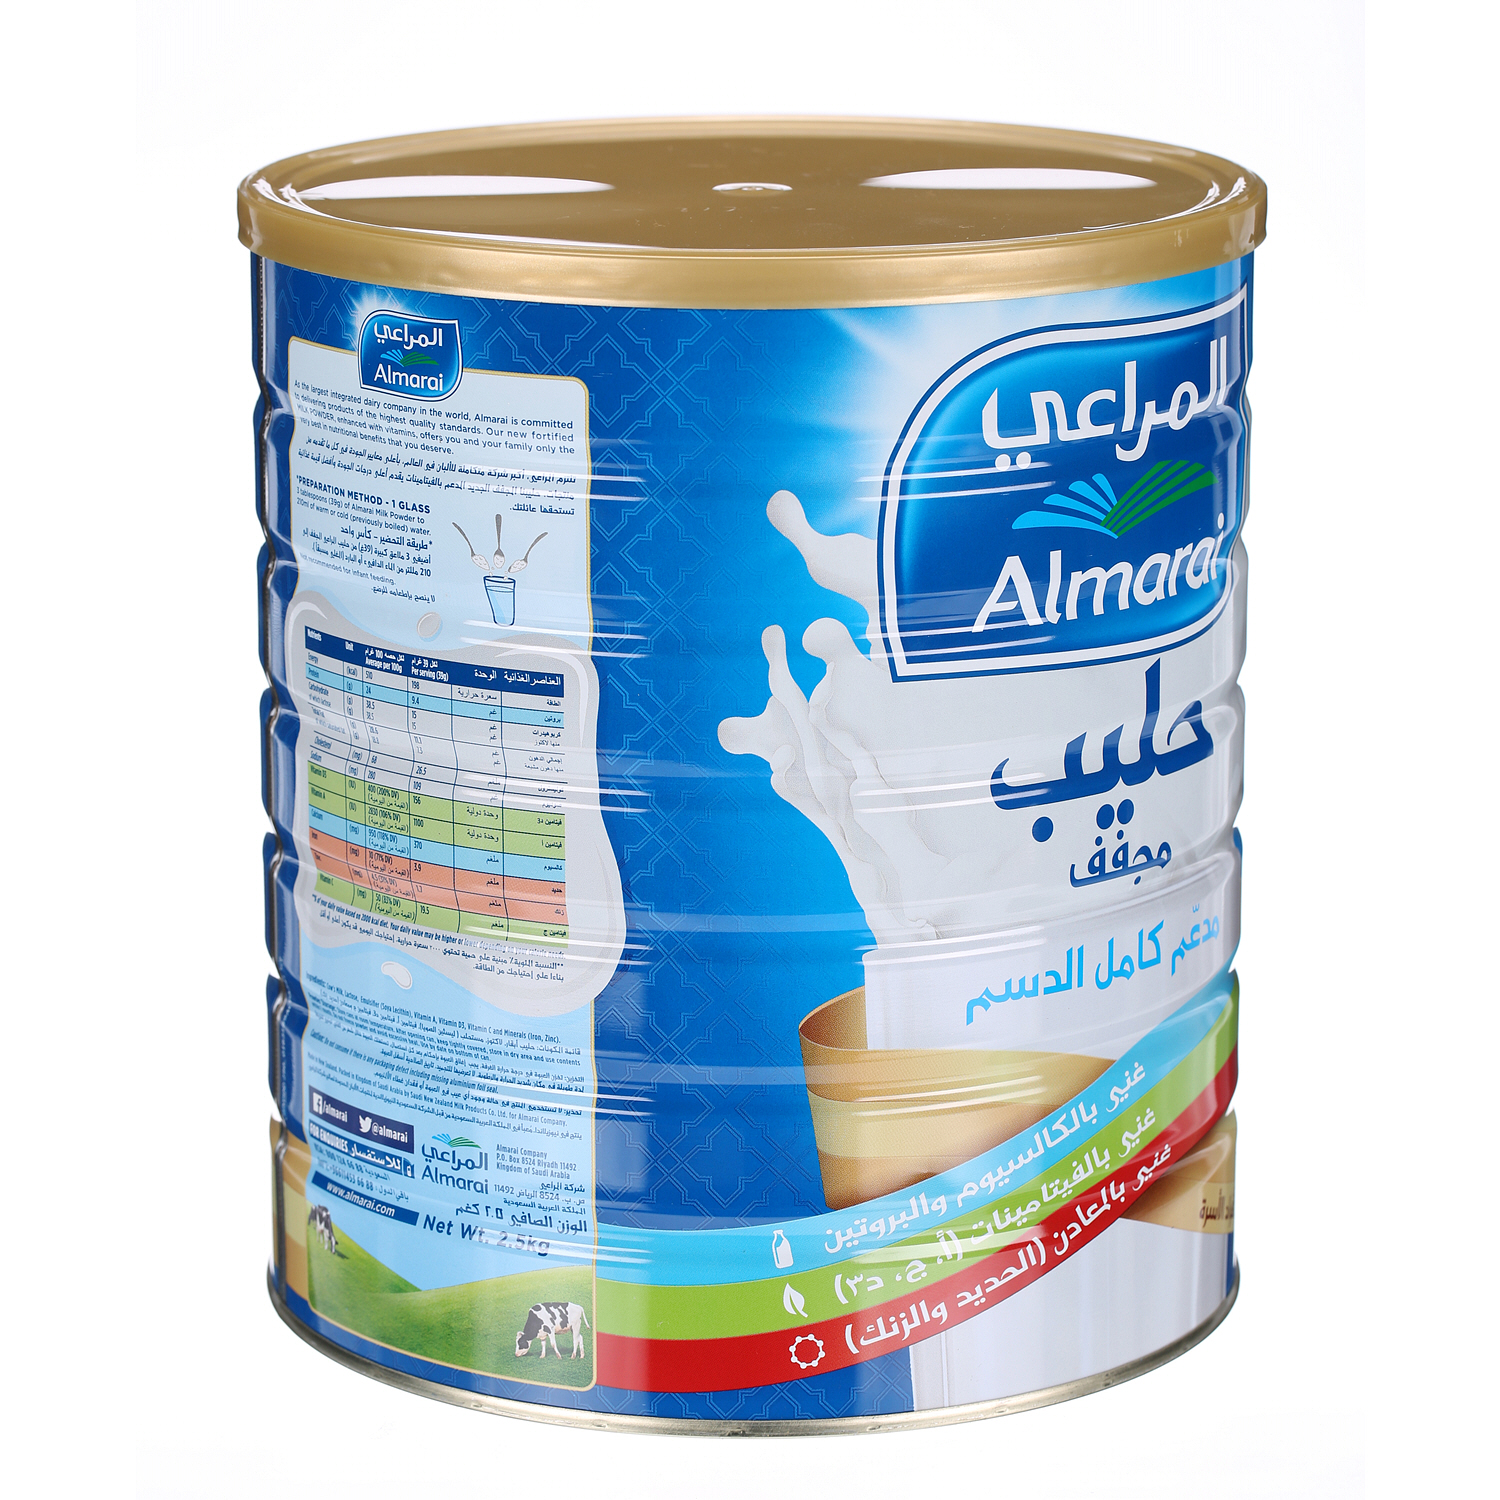 Almarai Milk Powder 2.5Kg